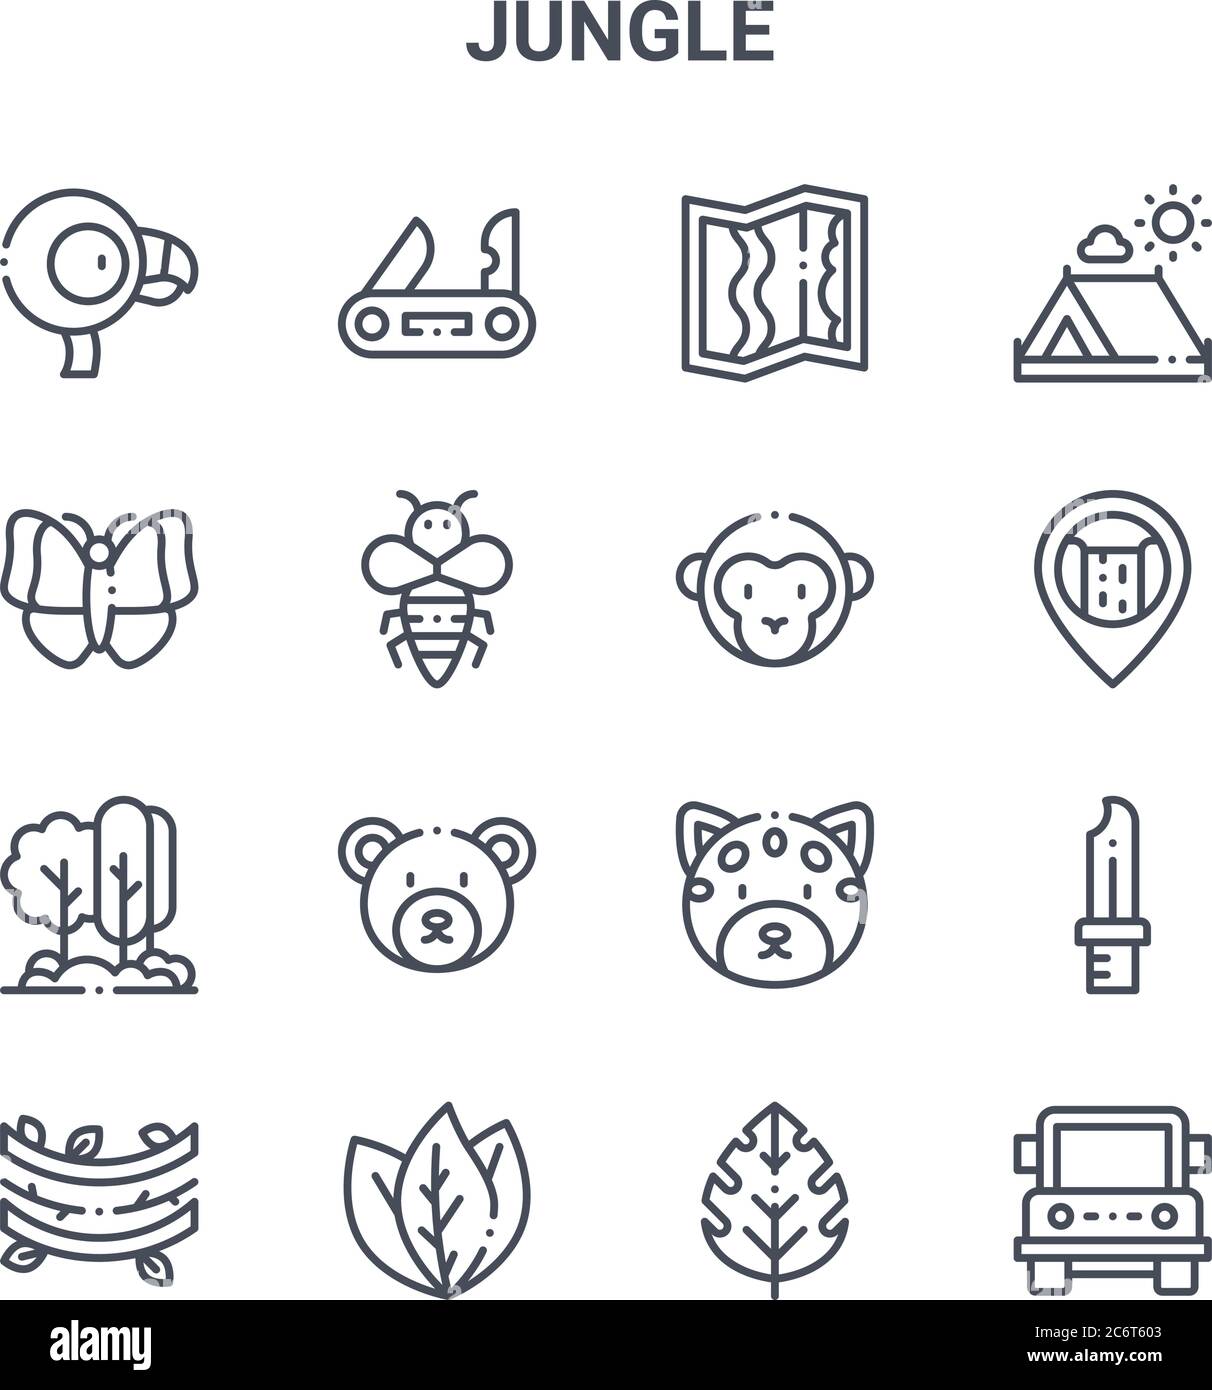 ensemble de 16 icônes de ligne vectorielle de concept jungle. icônes 64x64 à trait fin telles que couteau suisse, papillon, cascade, jaguar, feuilles, jeep, feuille, singe, came Illustration de Vecteur